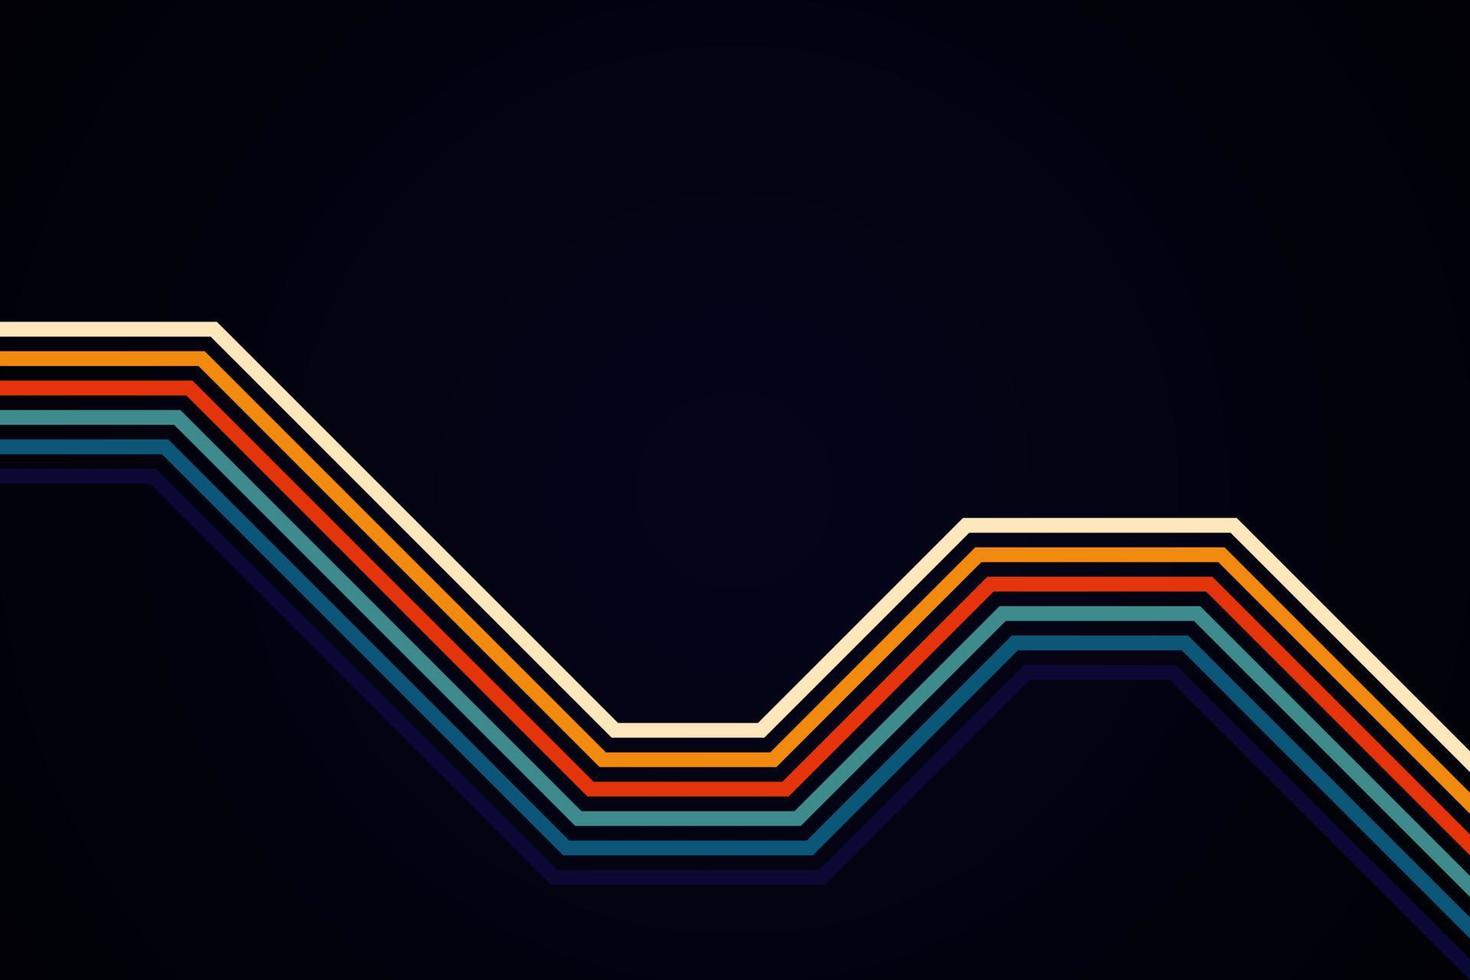 linhas listradas coloridas simples abstratas em estilo retro vetor